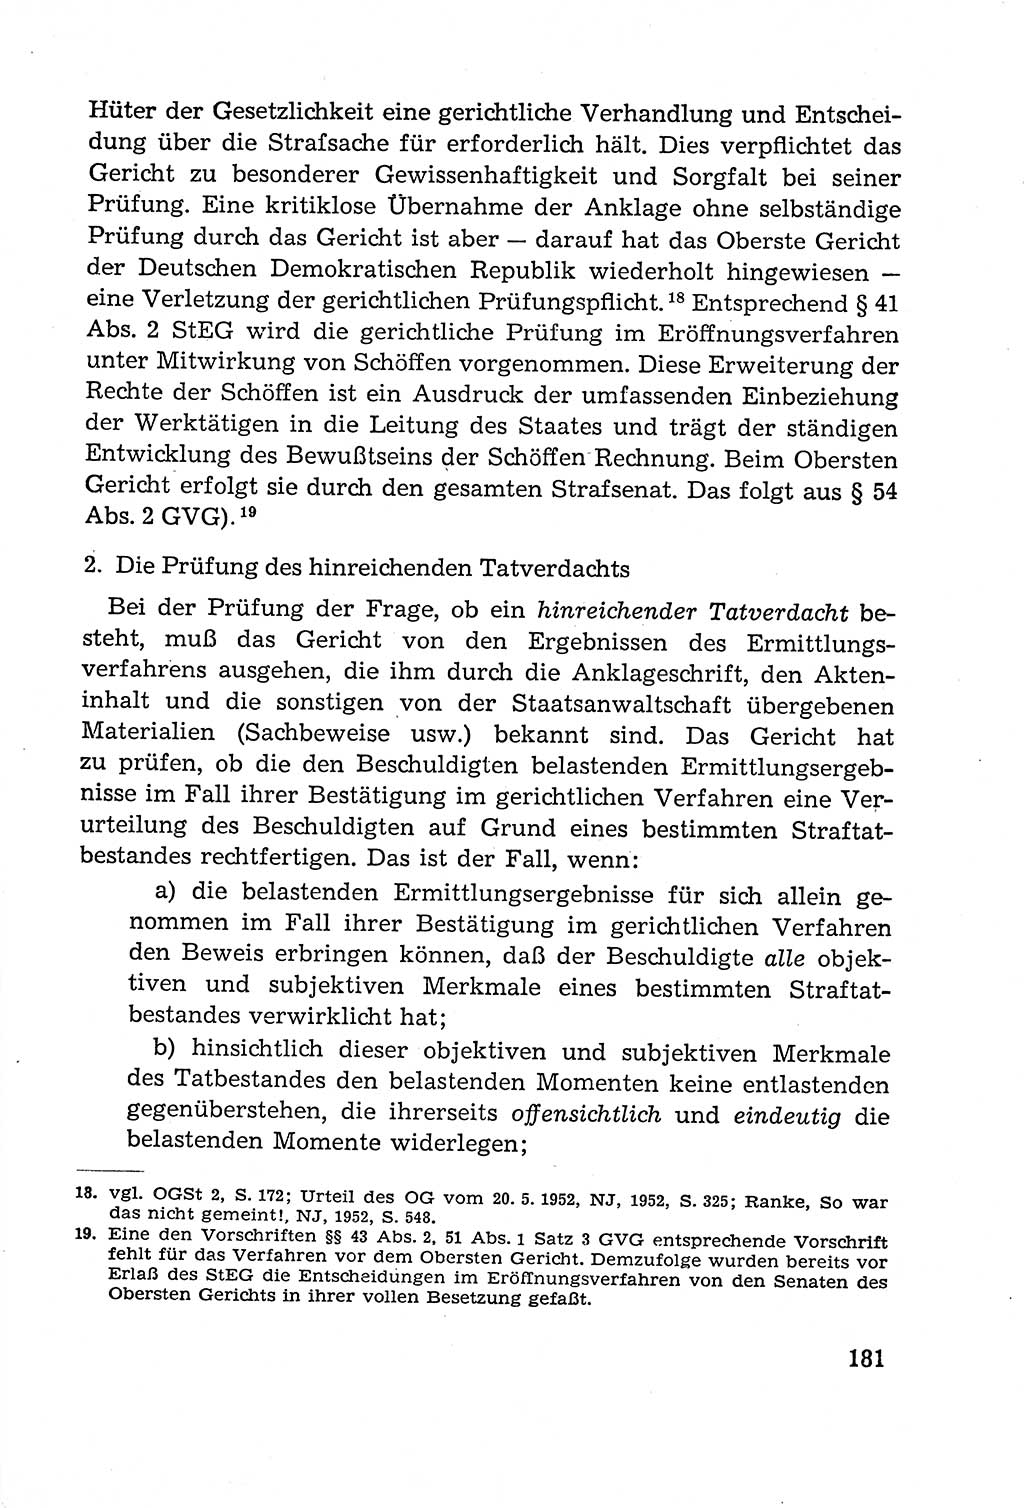 Leitfaden des Strafprozeßrechts der Deutschen Demokratischen Republik (DDR) 1959, Seite 181 (LF StPR DDR 1959, S. 181)